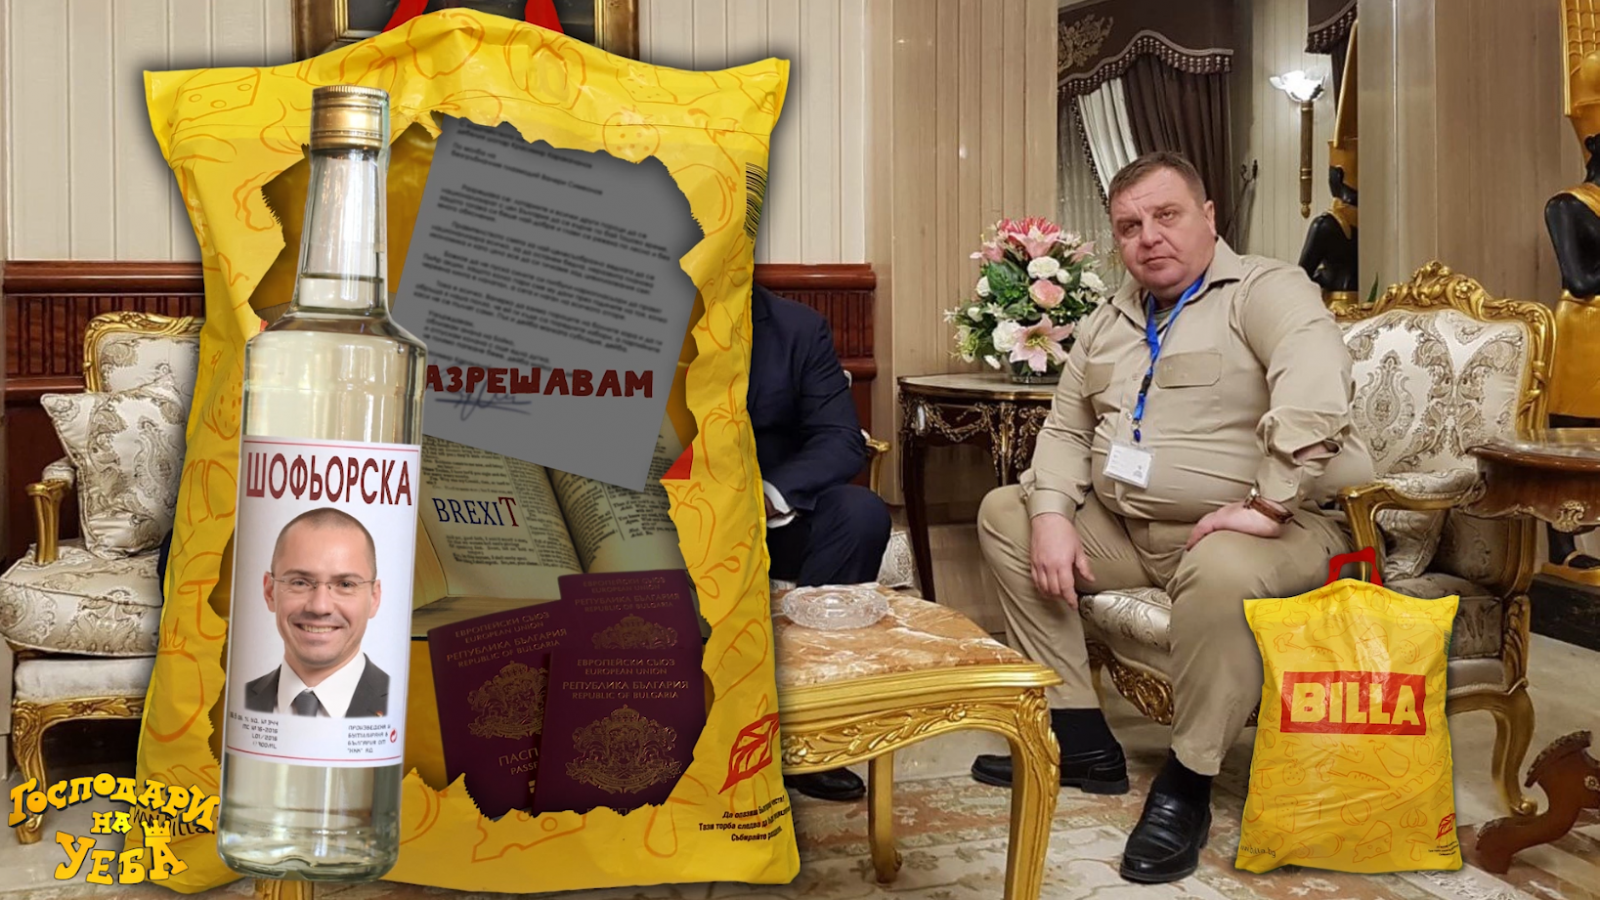 Най-накрая разбрахме какво носи Каракачанов в прословутата торбичка (Господари на Уеба)